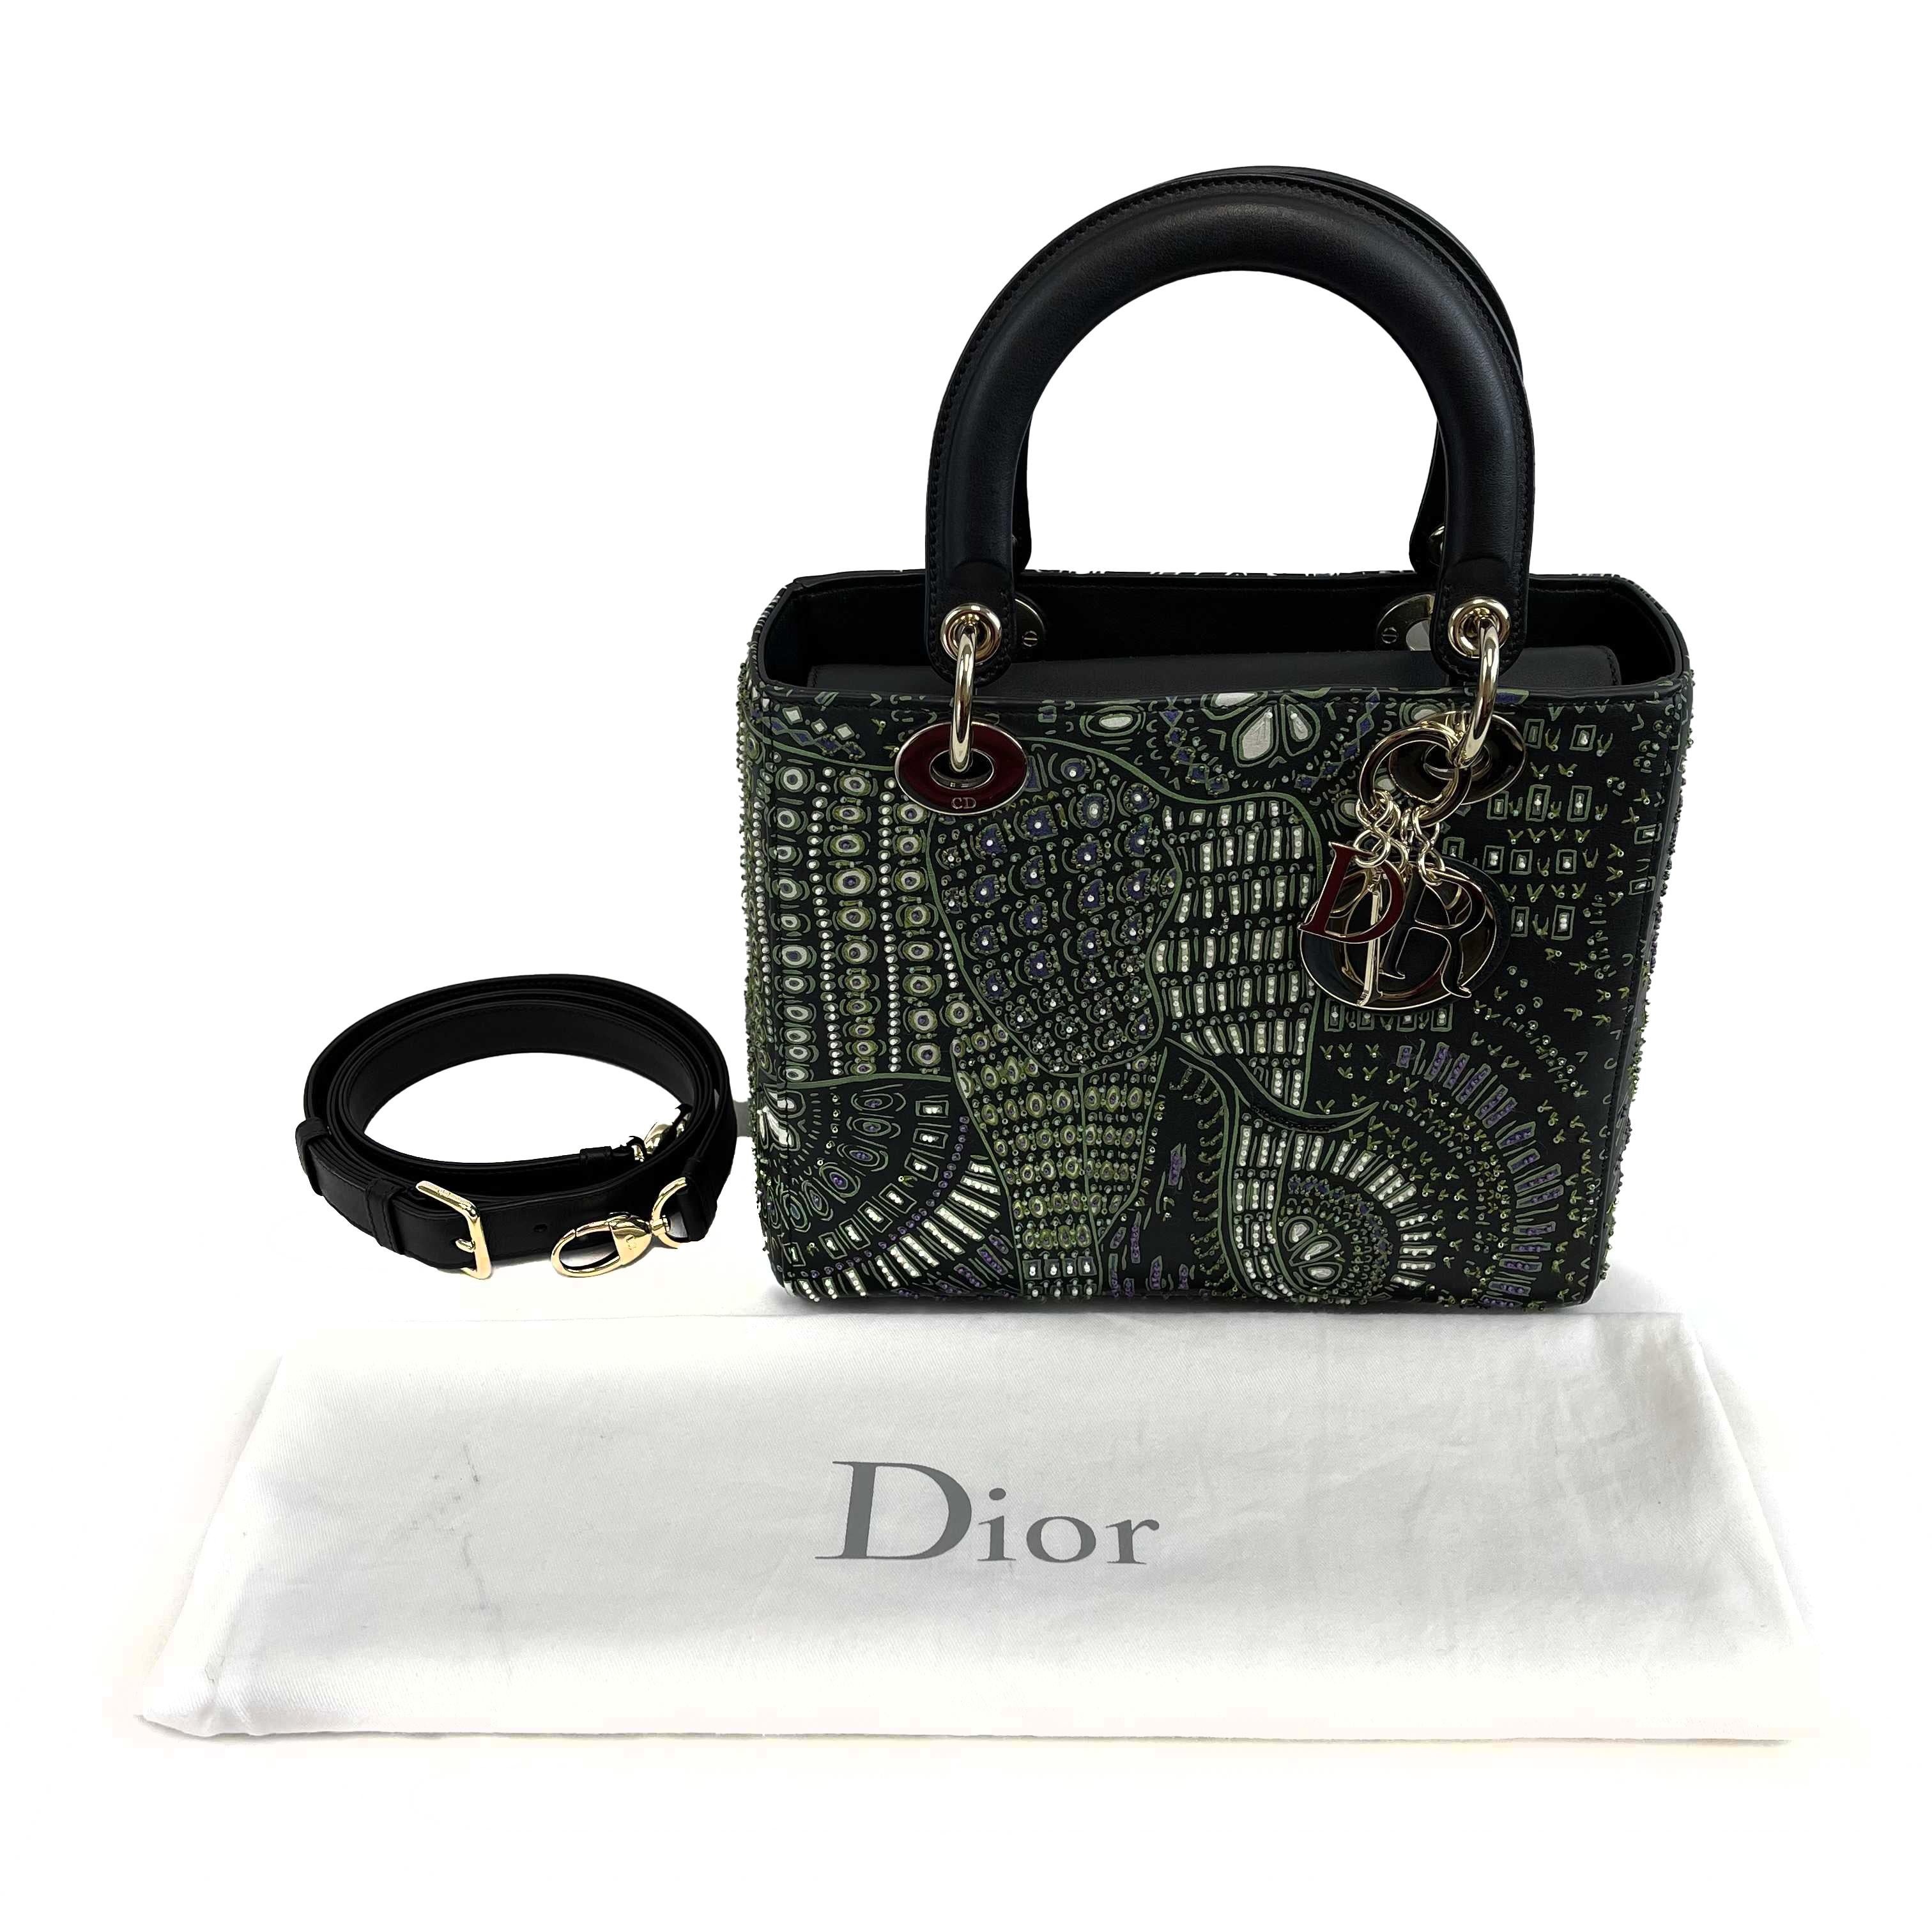 Christian Dior - Sac à main « Lady Dior » brodé d'animaux noirs et verts, taille moyenne Excellent état à Sanford, FL